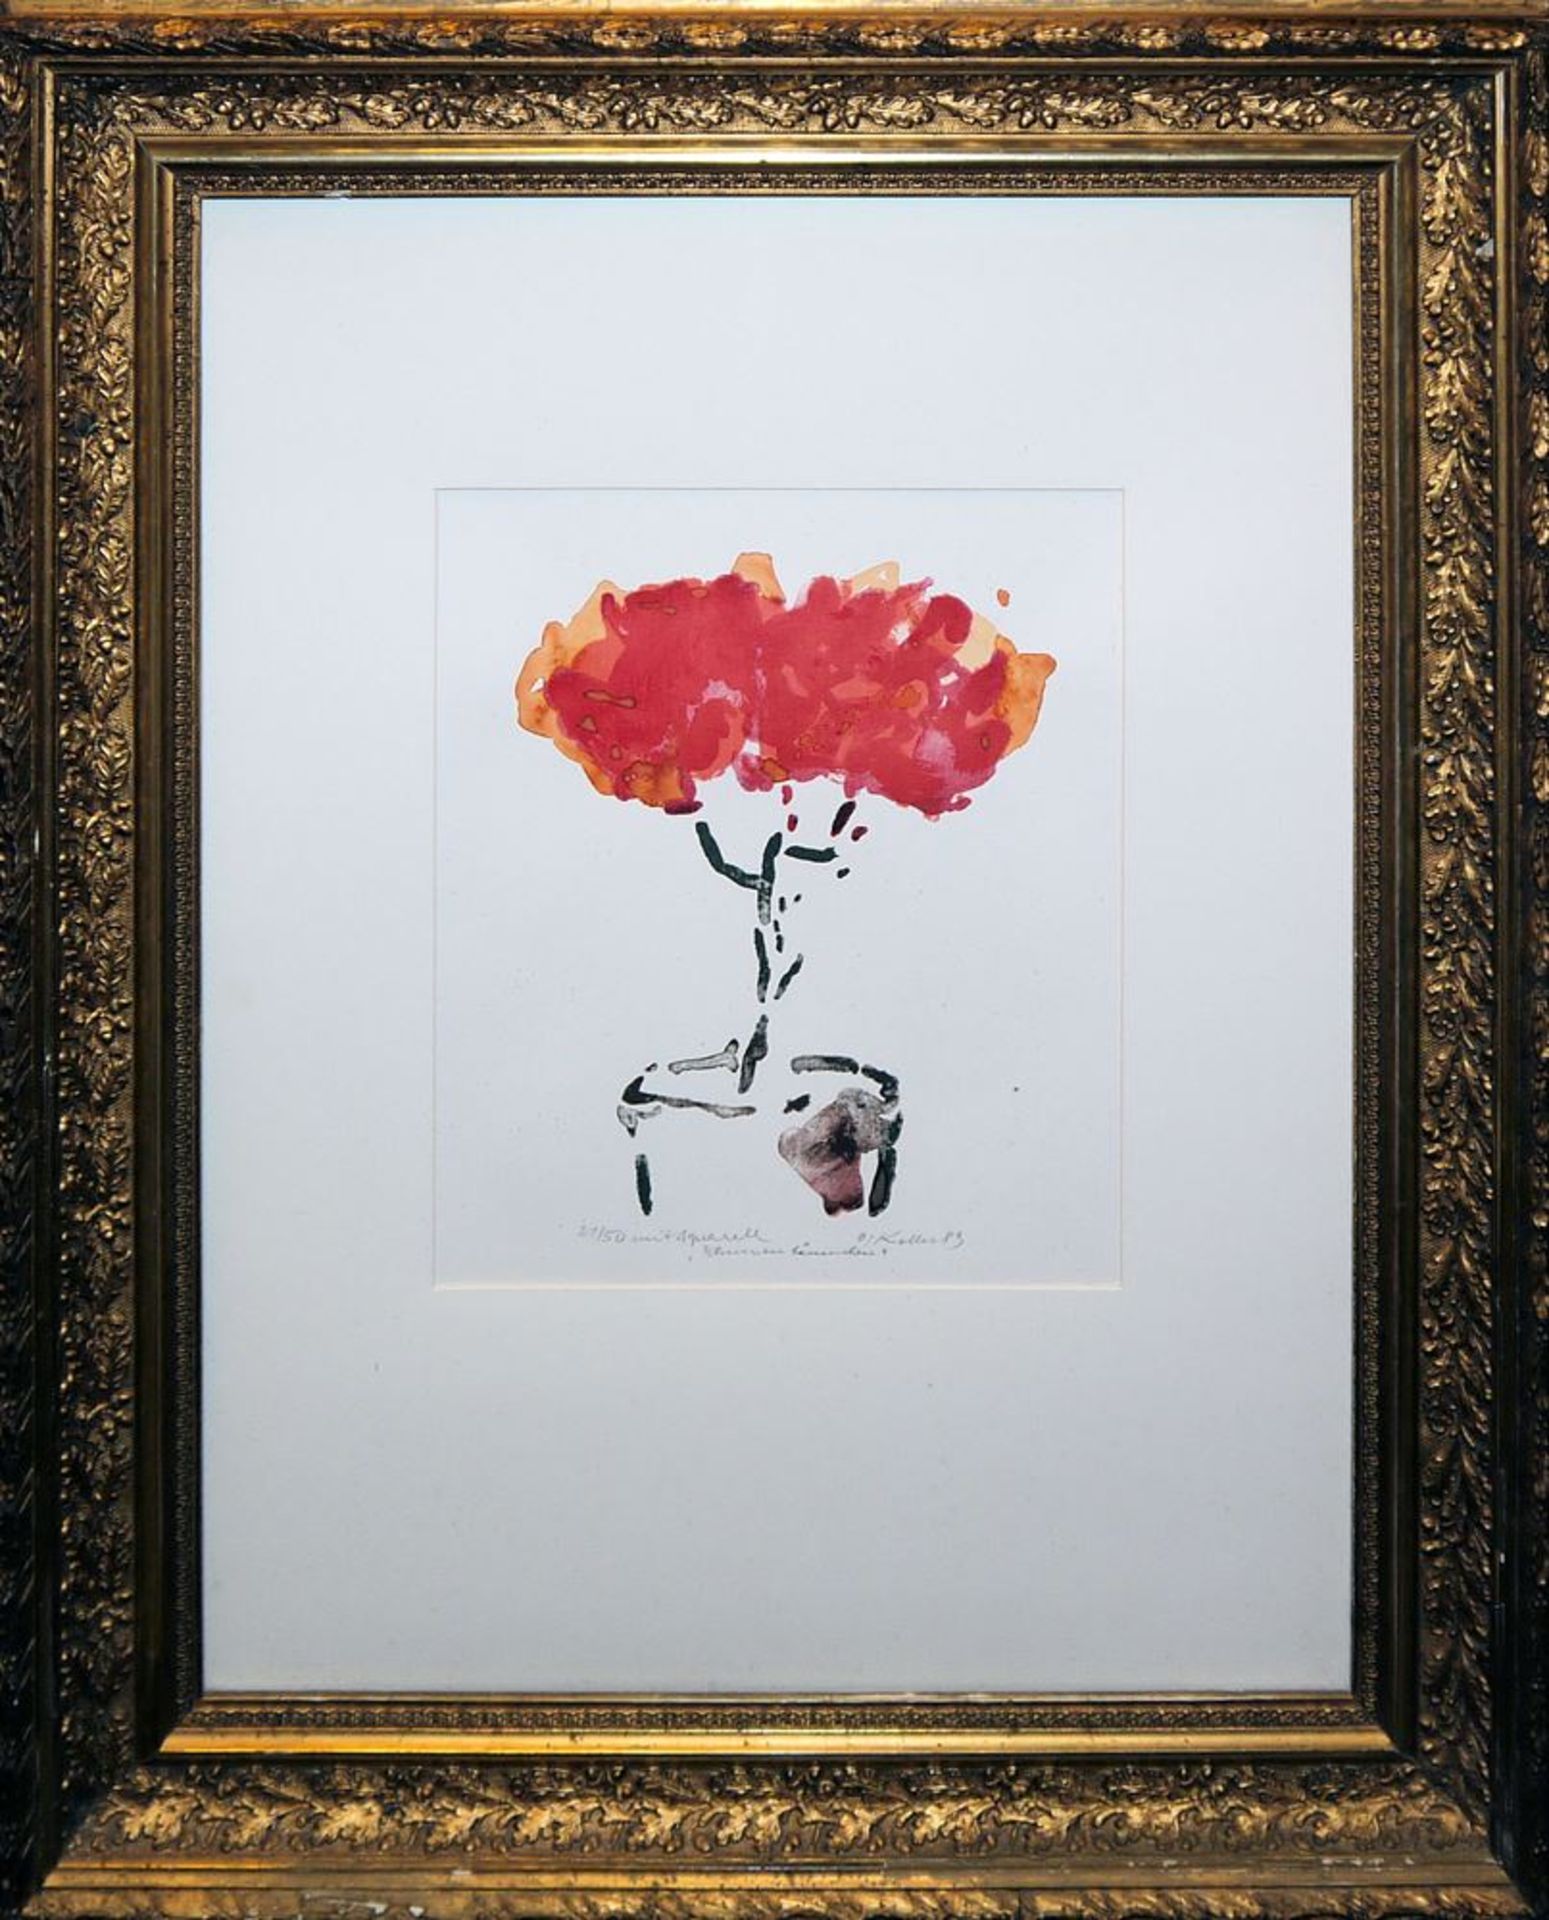 Oskar Koller, "Blumen Bäumchen", signierte Lithographie mit Aquarell von 1989, Unikat im Goldrahmen